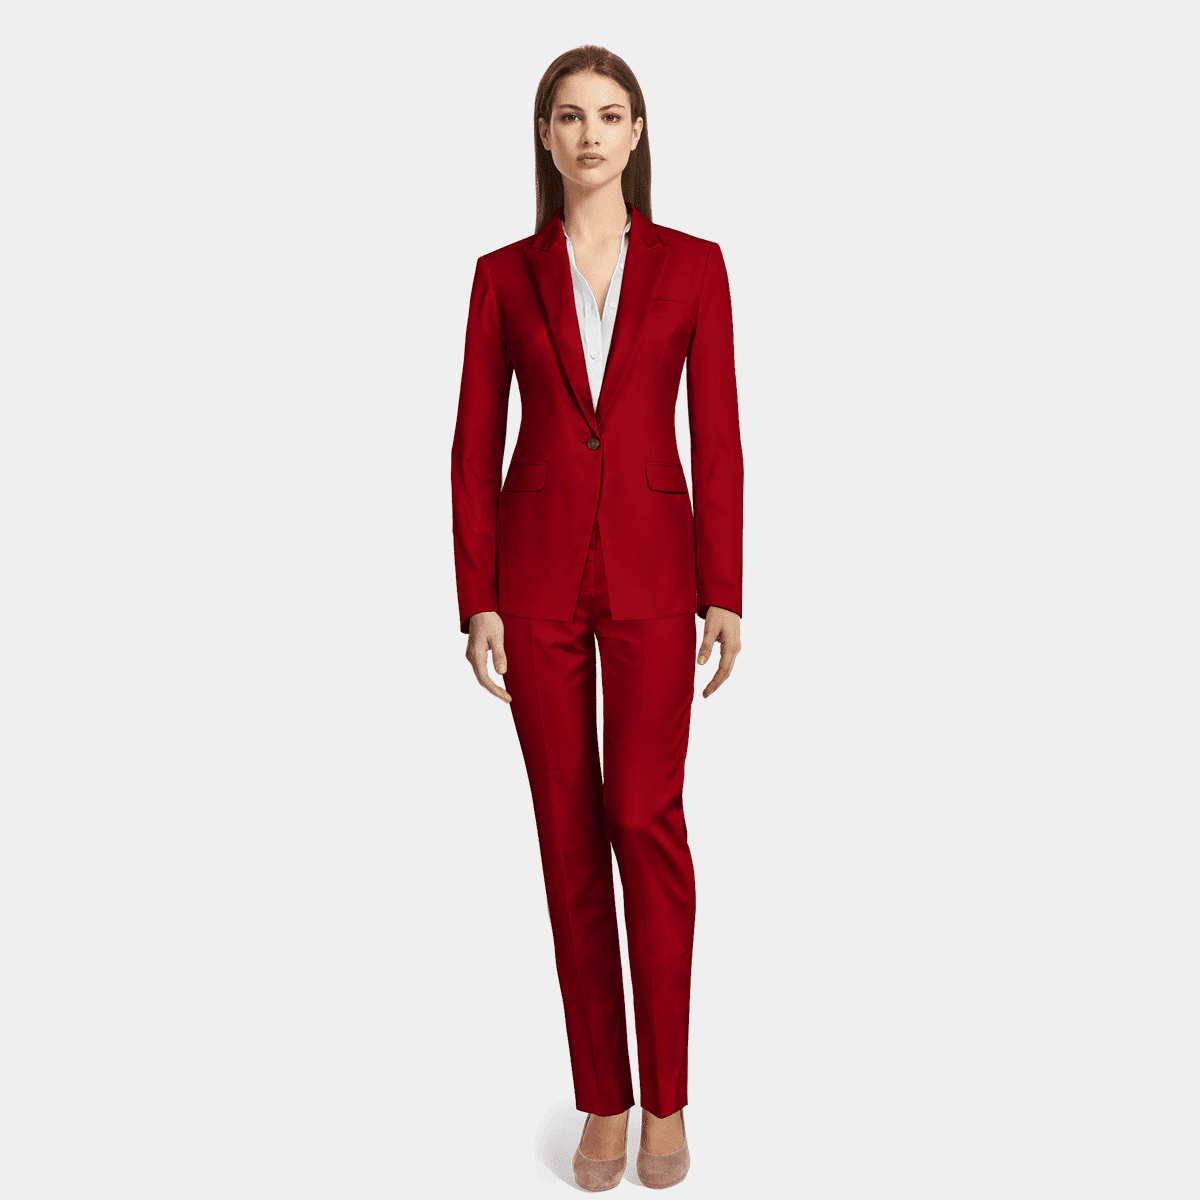 Red Velvet Pant Suit with peak lapels $329 | Sumissura